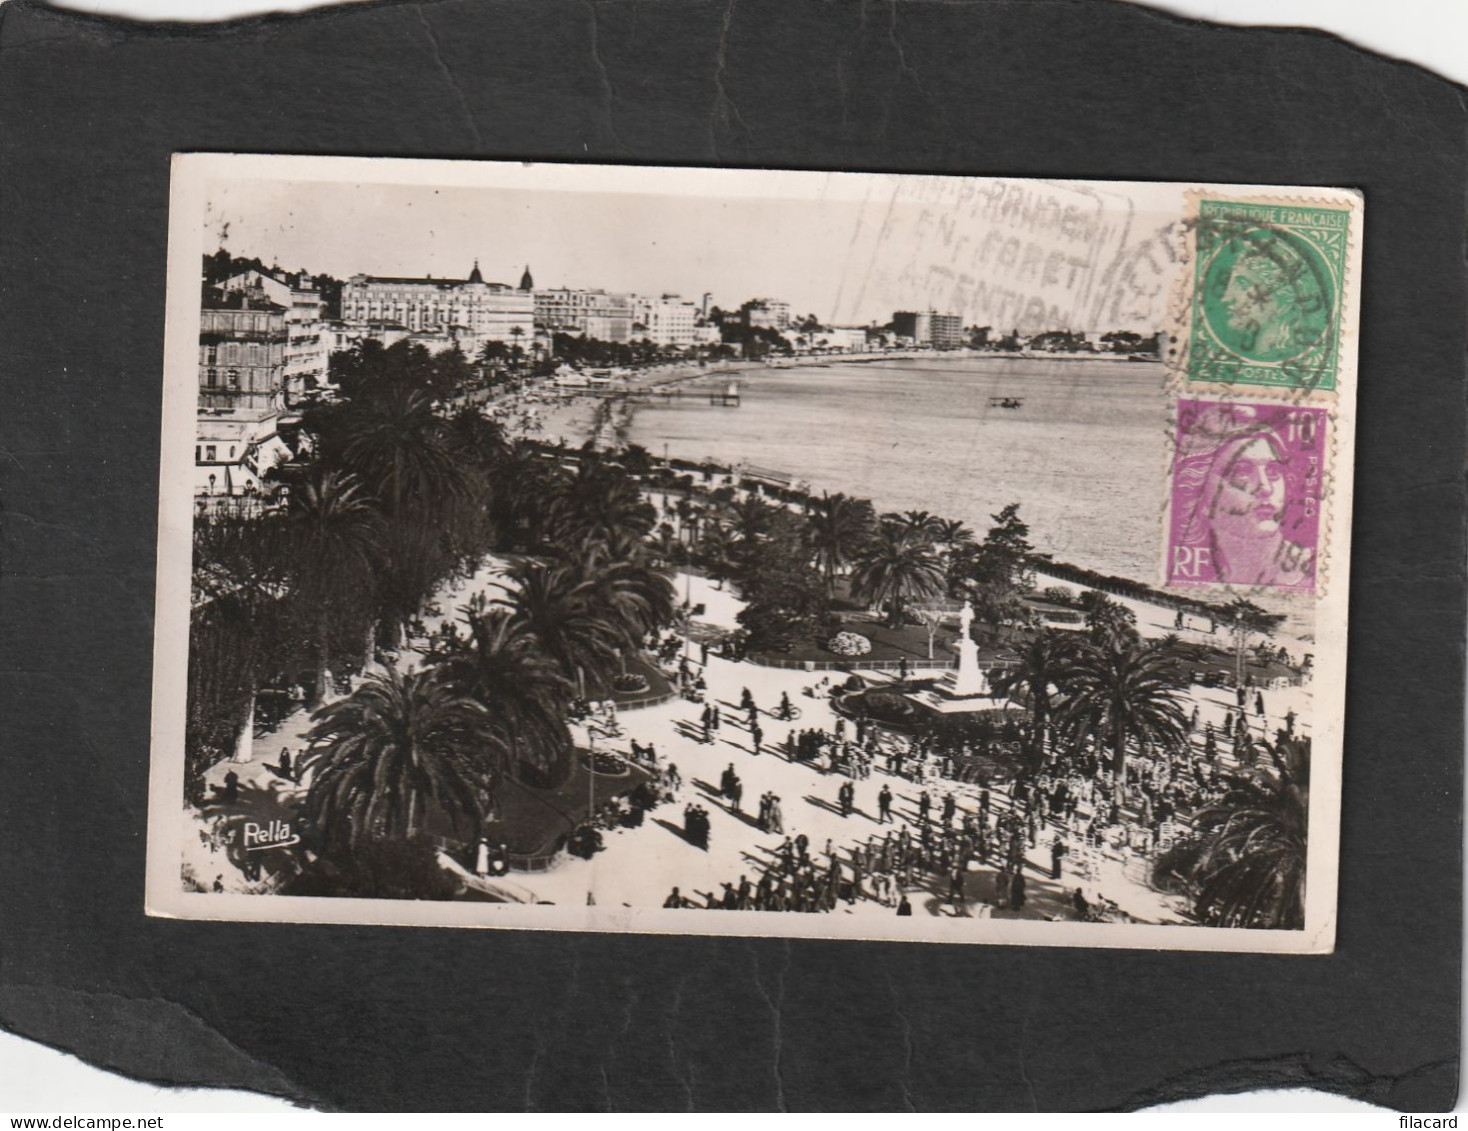 128754           Francia,     Cannes,   Les  Jardins  De La  Croisette,   VG   1948 - Cannes